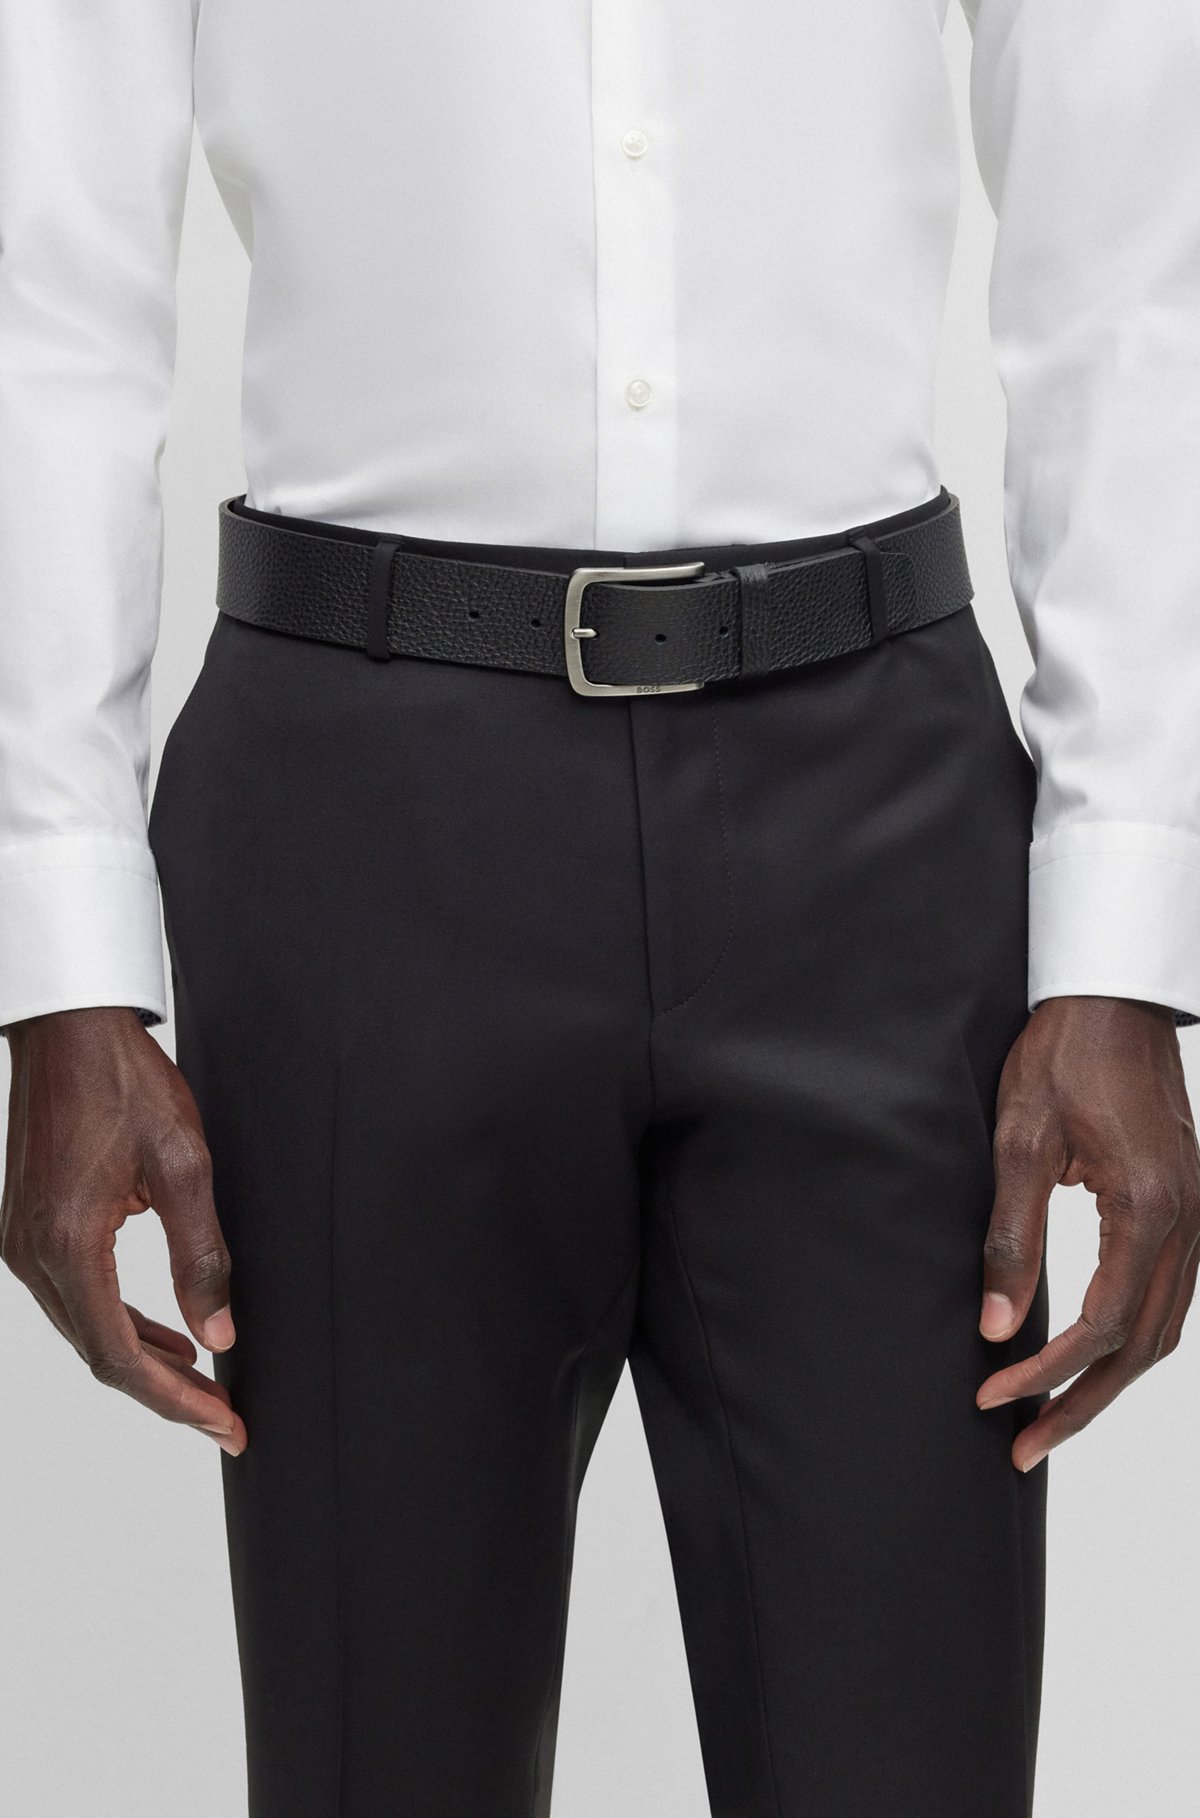 Cinturón de piel granulada italiana con hebilla de la marca, Negro